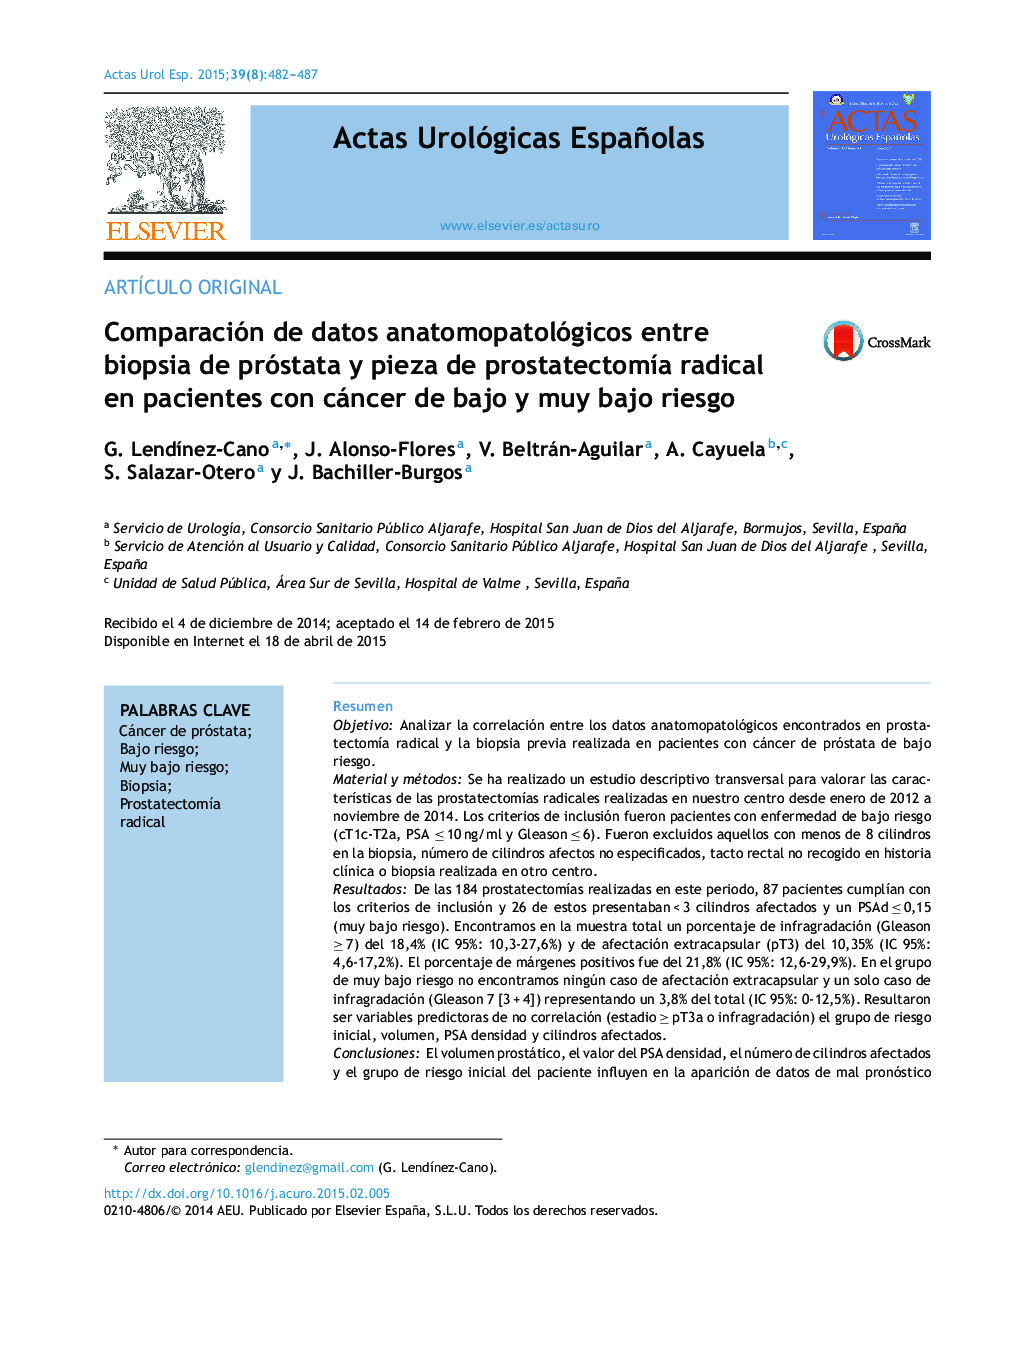 Comparación de datos anatomopatológicos entre biopsia de próstata y pieza de prostatectomÃ­a radical en pacientes con cáncer de bajo y muy bajo riesgo